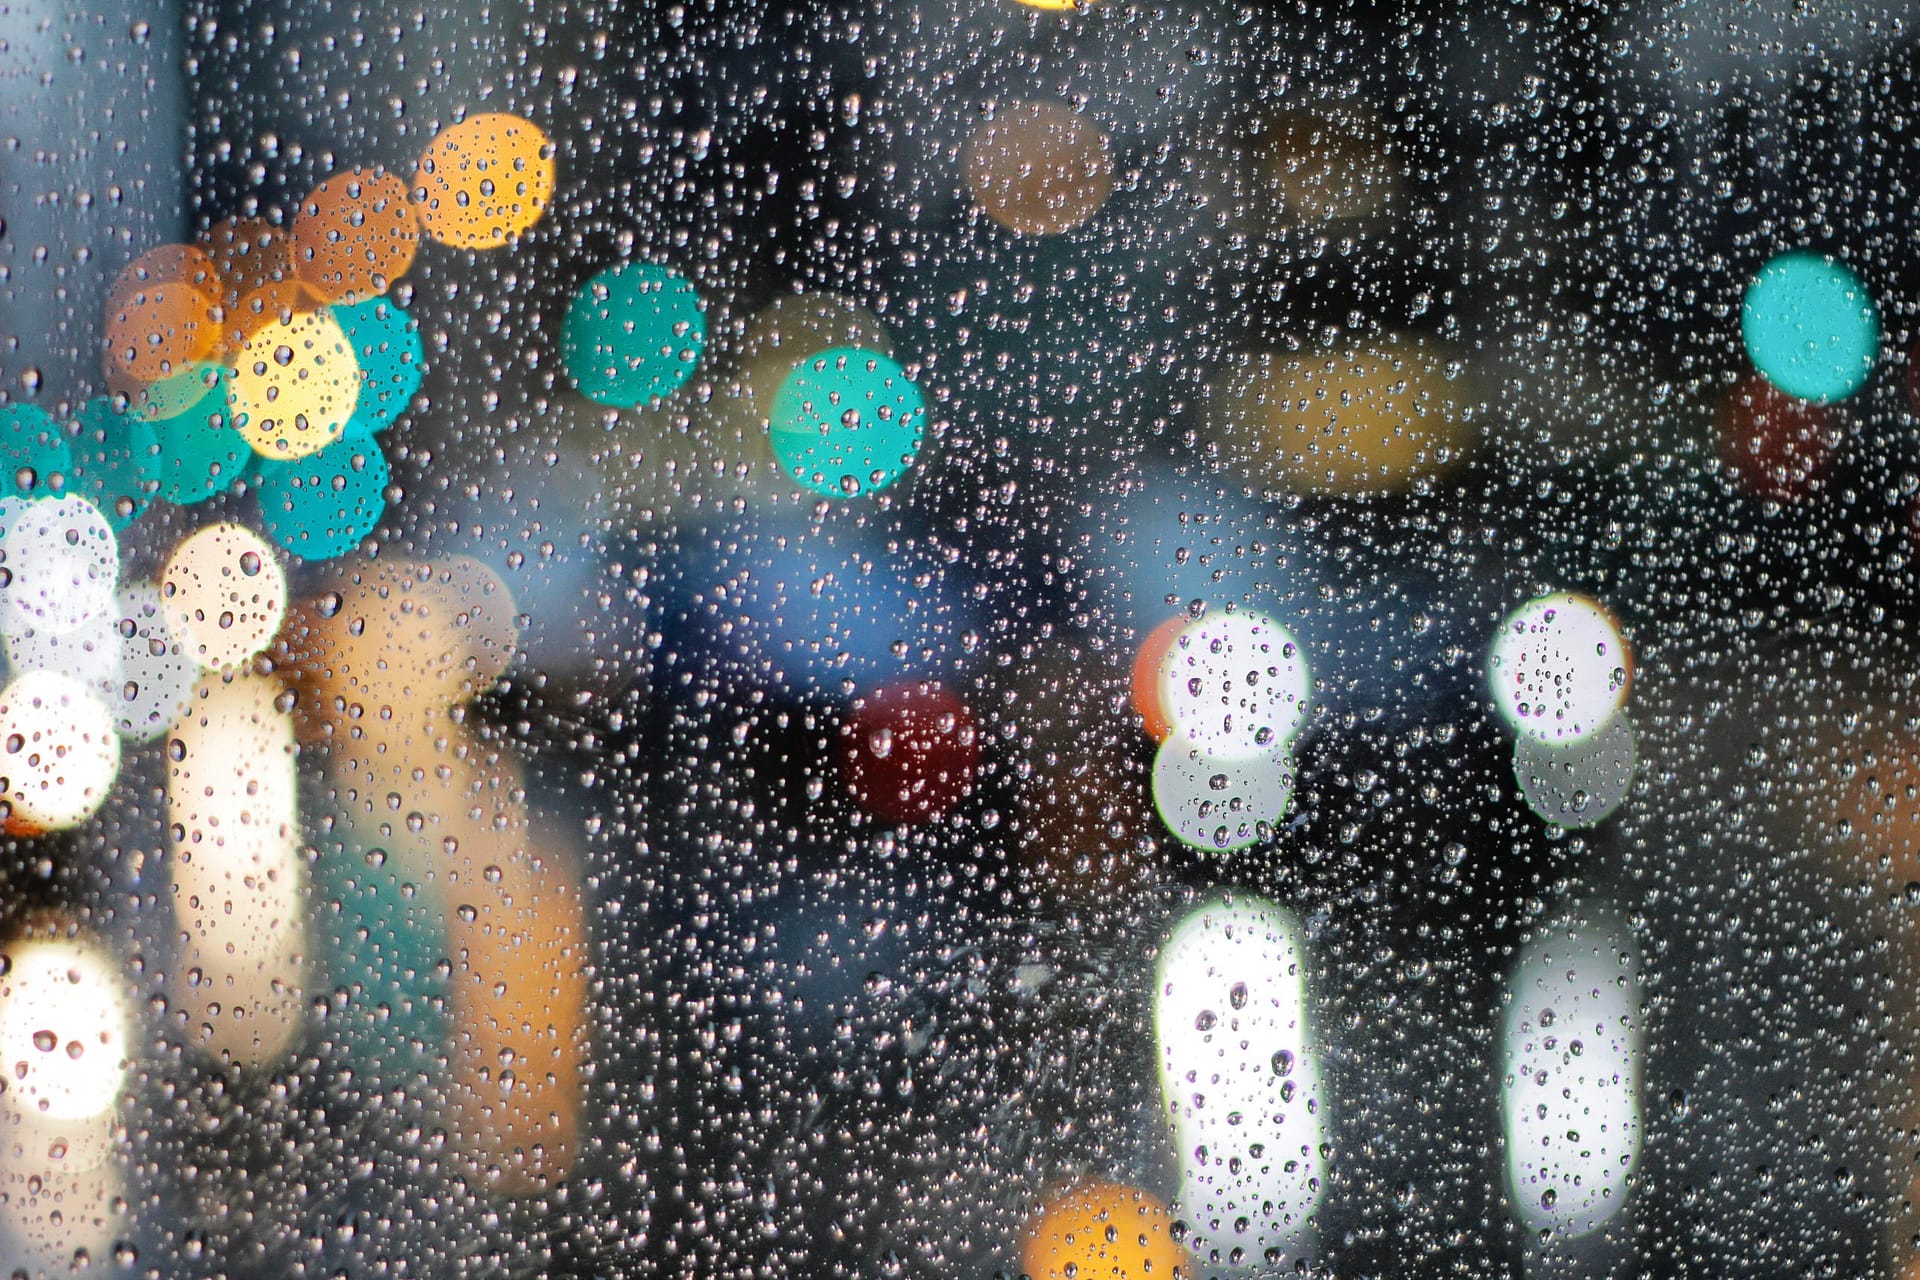 5 Rainy Day Photography Tips - Master the Art